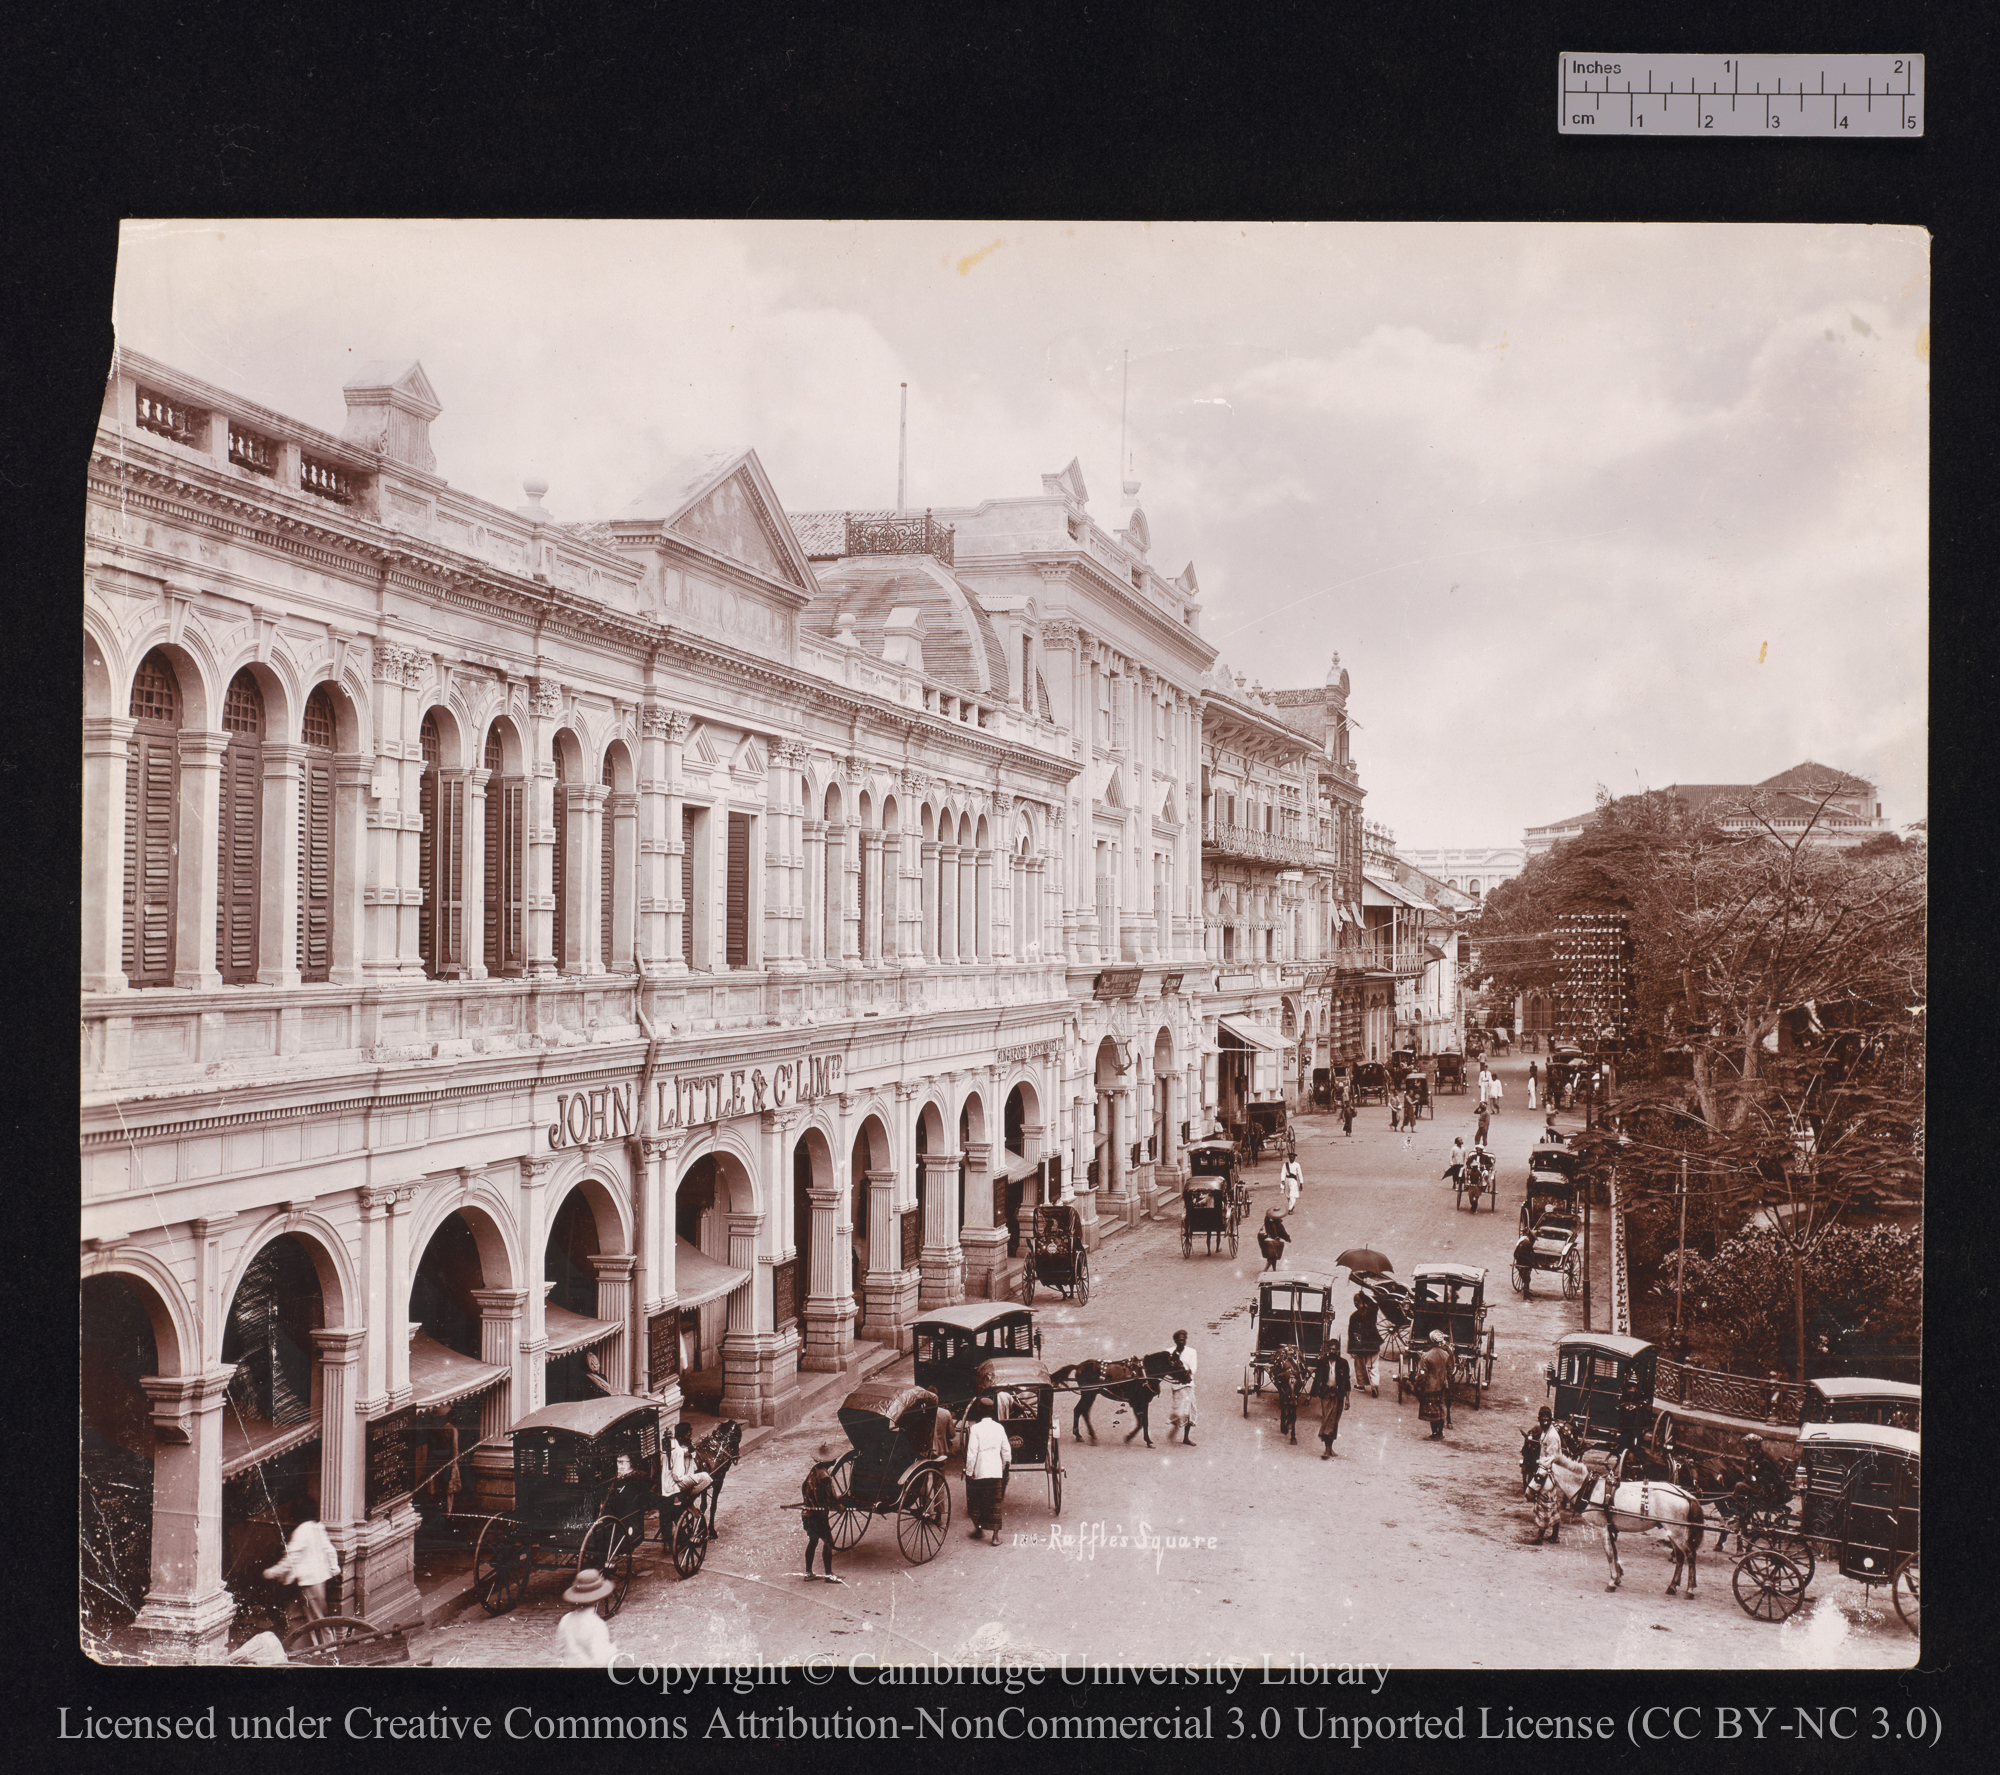 Raffles Square, 1890 - 1899